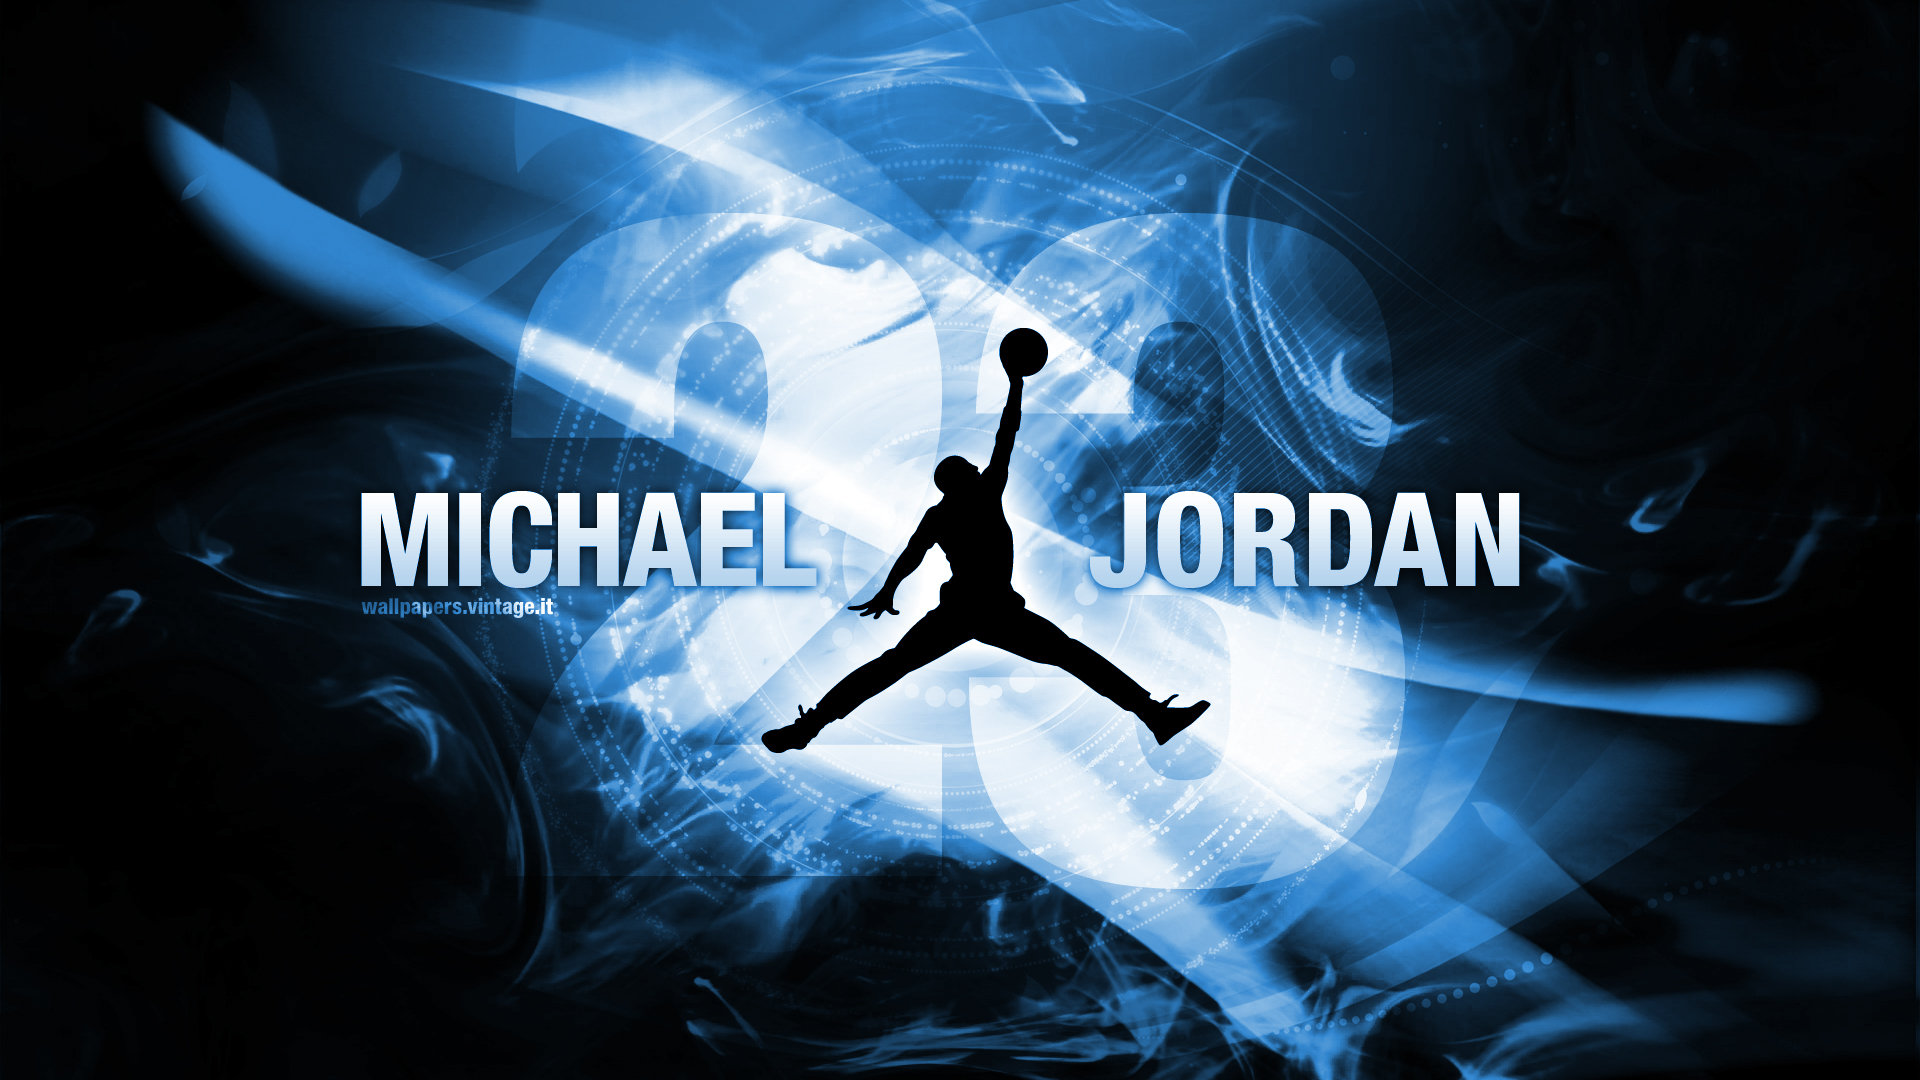 Michael Jordan Wallpaper 1920x1080 74 images